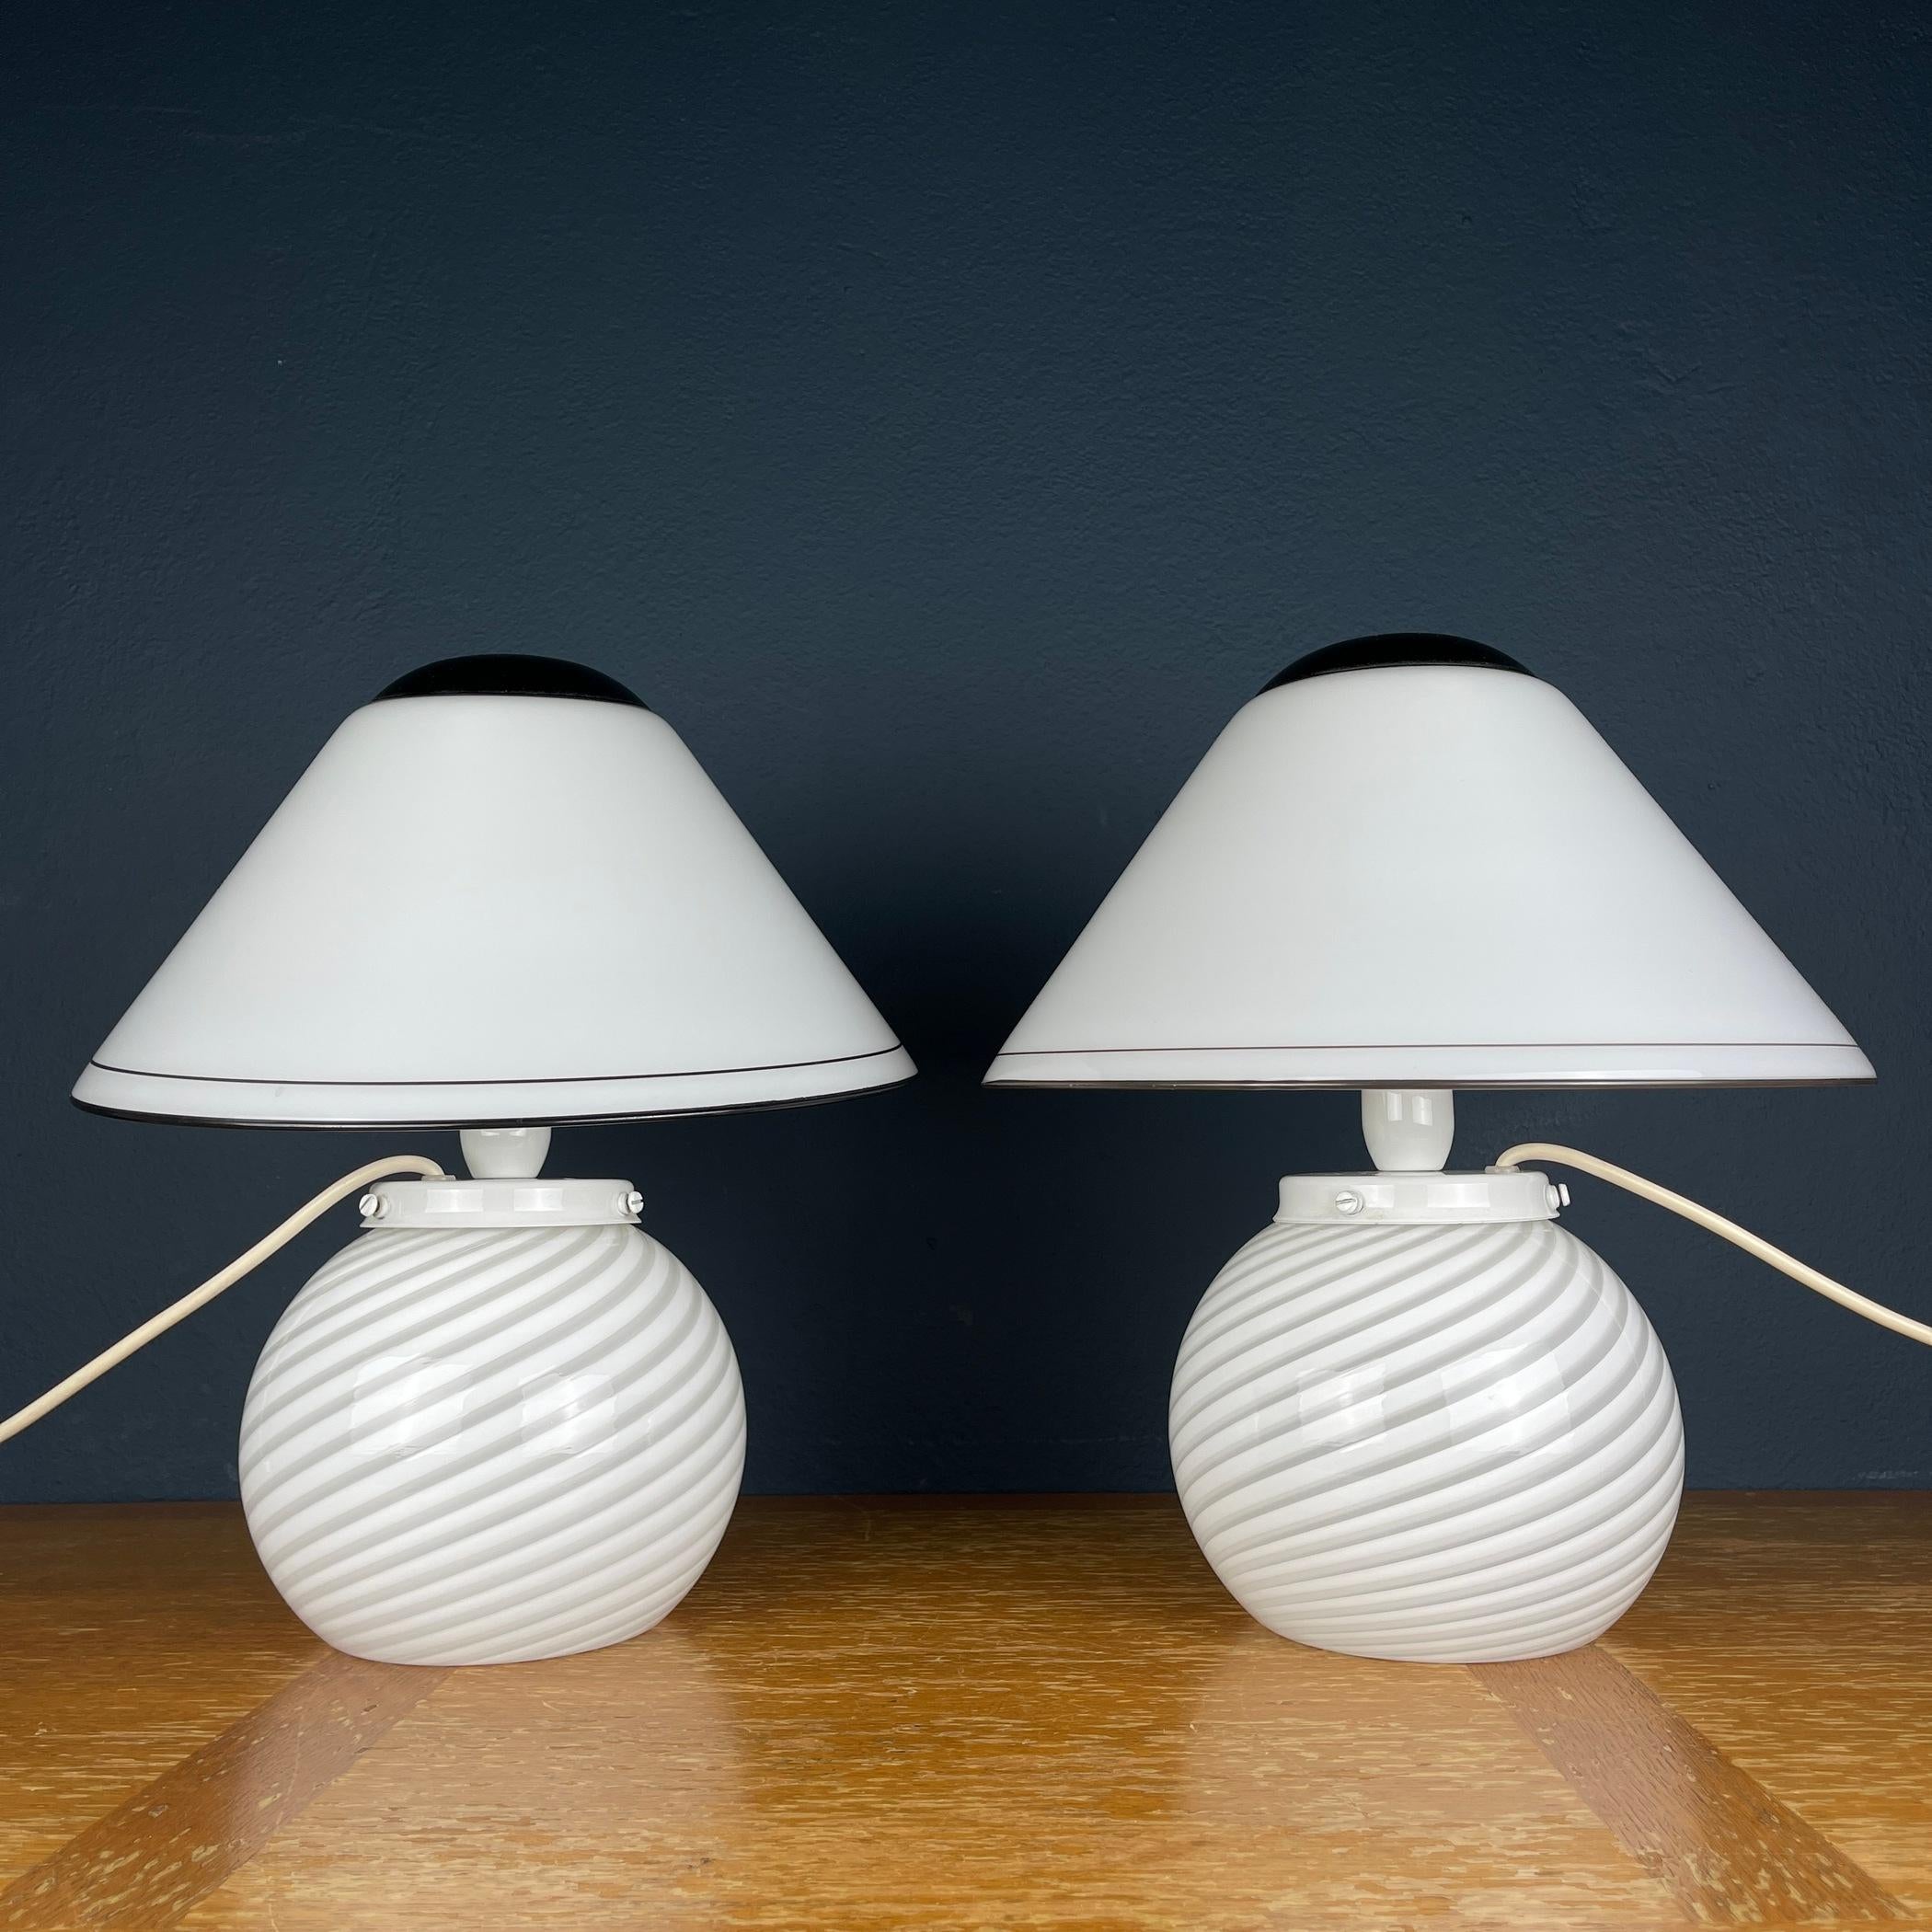 Admirez cette exquise paire de lampes champignons de Murano, fabriquées avec précision en Italie au cours des vibrantes années 1970. Chaque lampe témoigne de l'allure intemporelle du verre tourbillonnant et projette des motifs enchanteurs dans votre